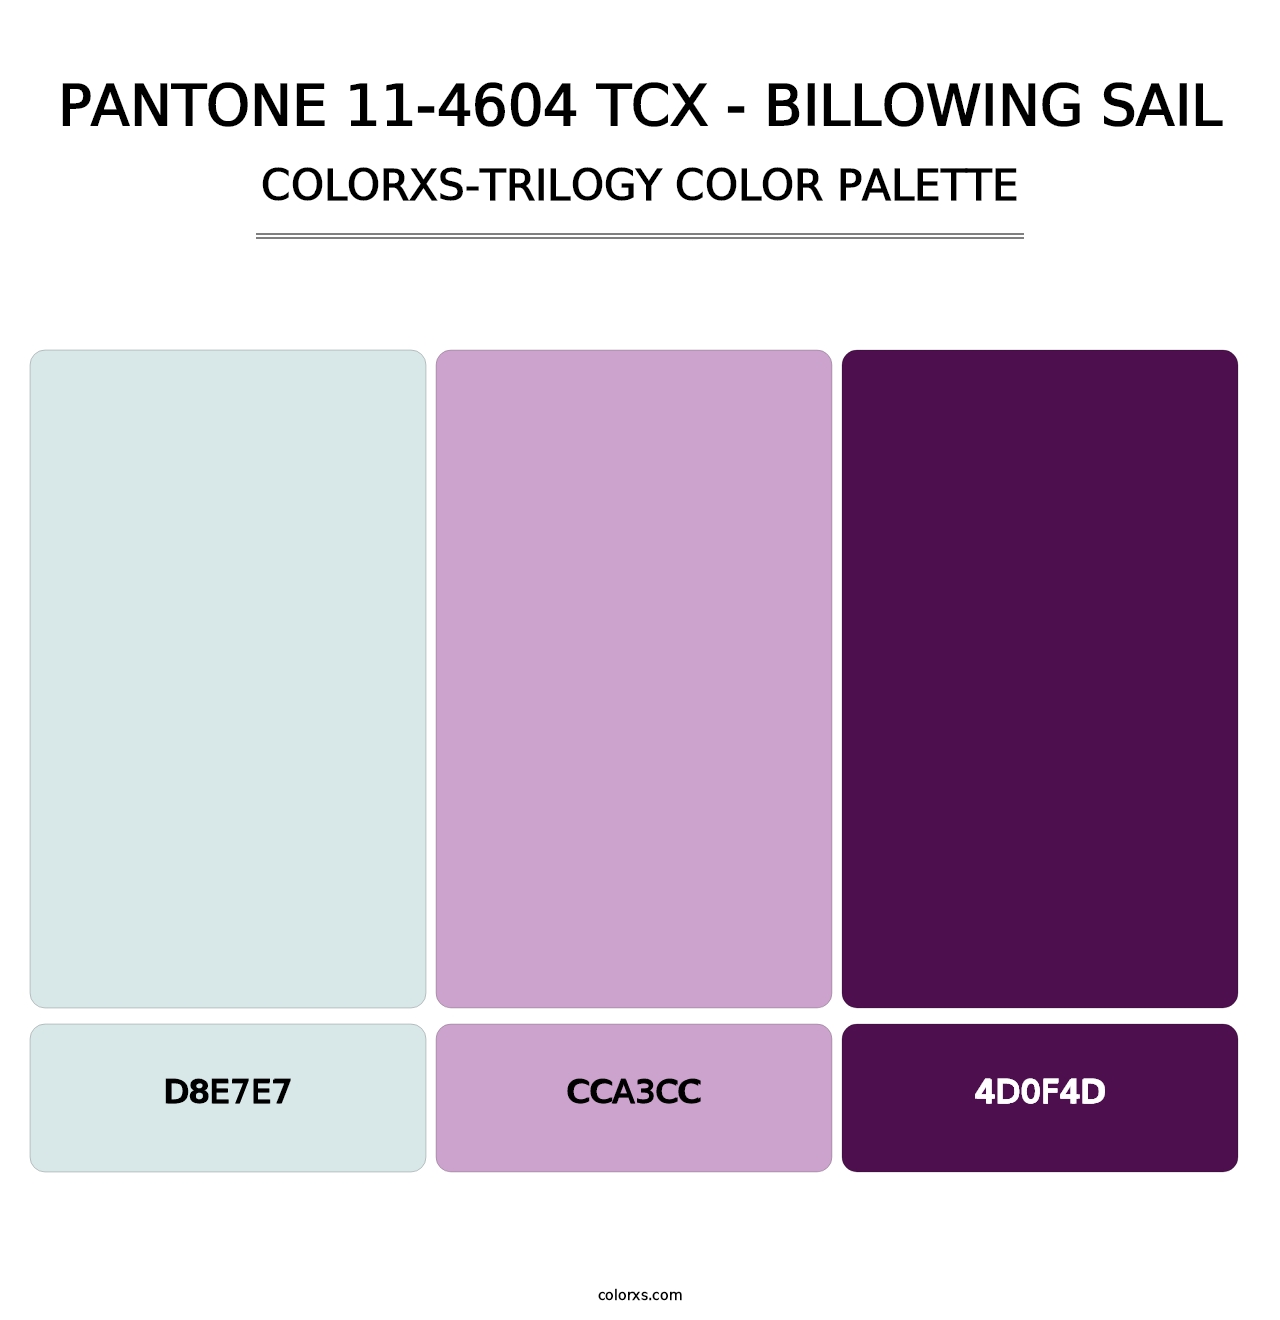 PANTONE 11-4604 TCX - Billowing Sail - Colorxs Trilogy Palette